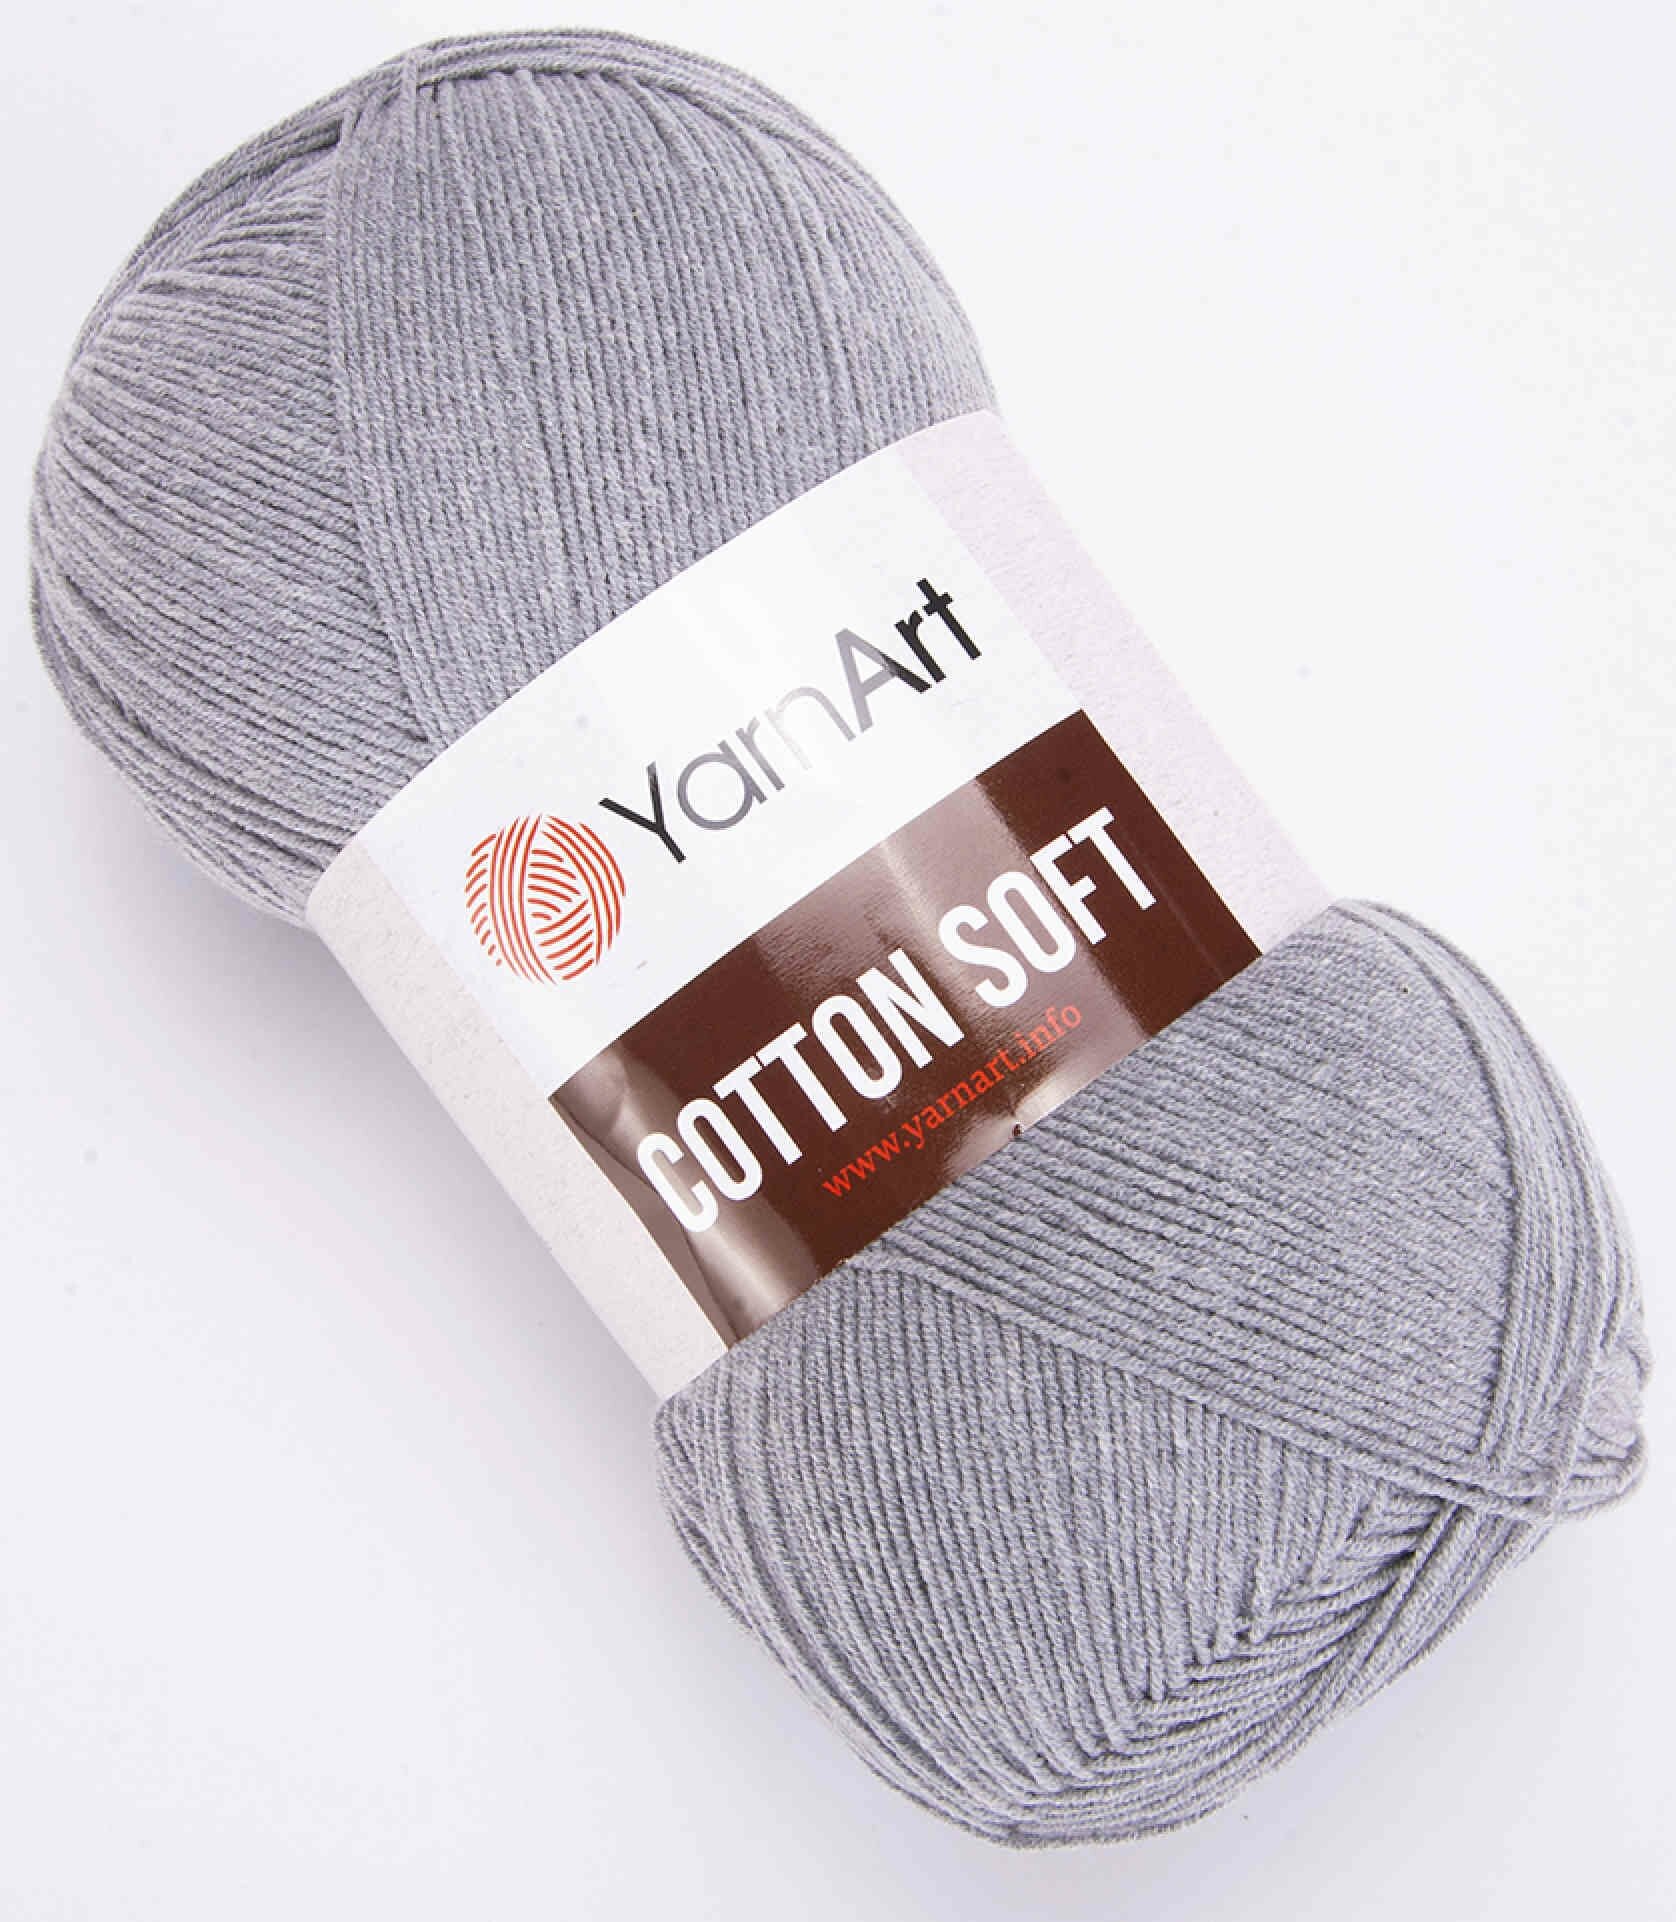 Пряжа YarnArt Cotton soft светло-серый (46), 55%хлопок/45%полиакрил, 600м, 100г, 2шт